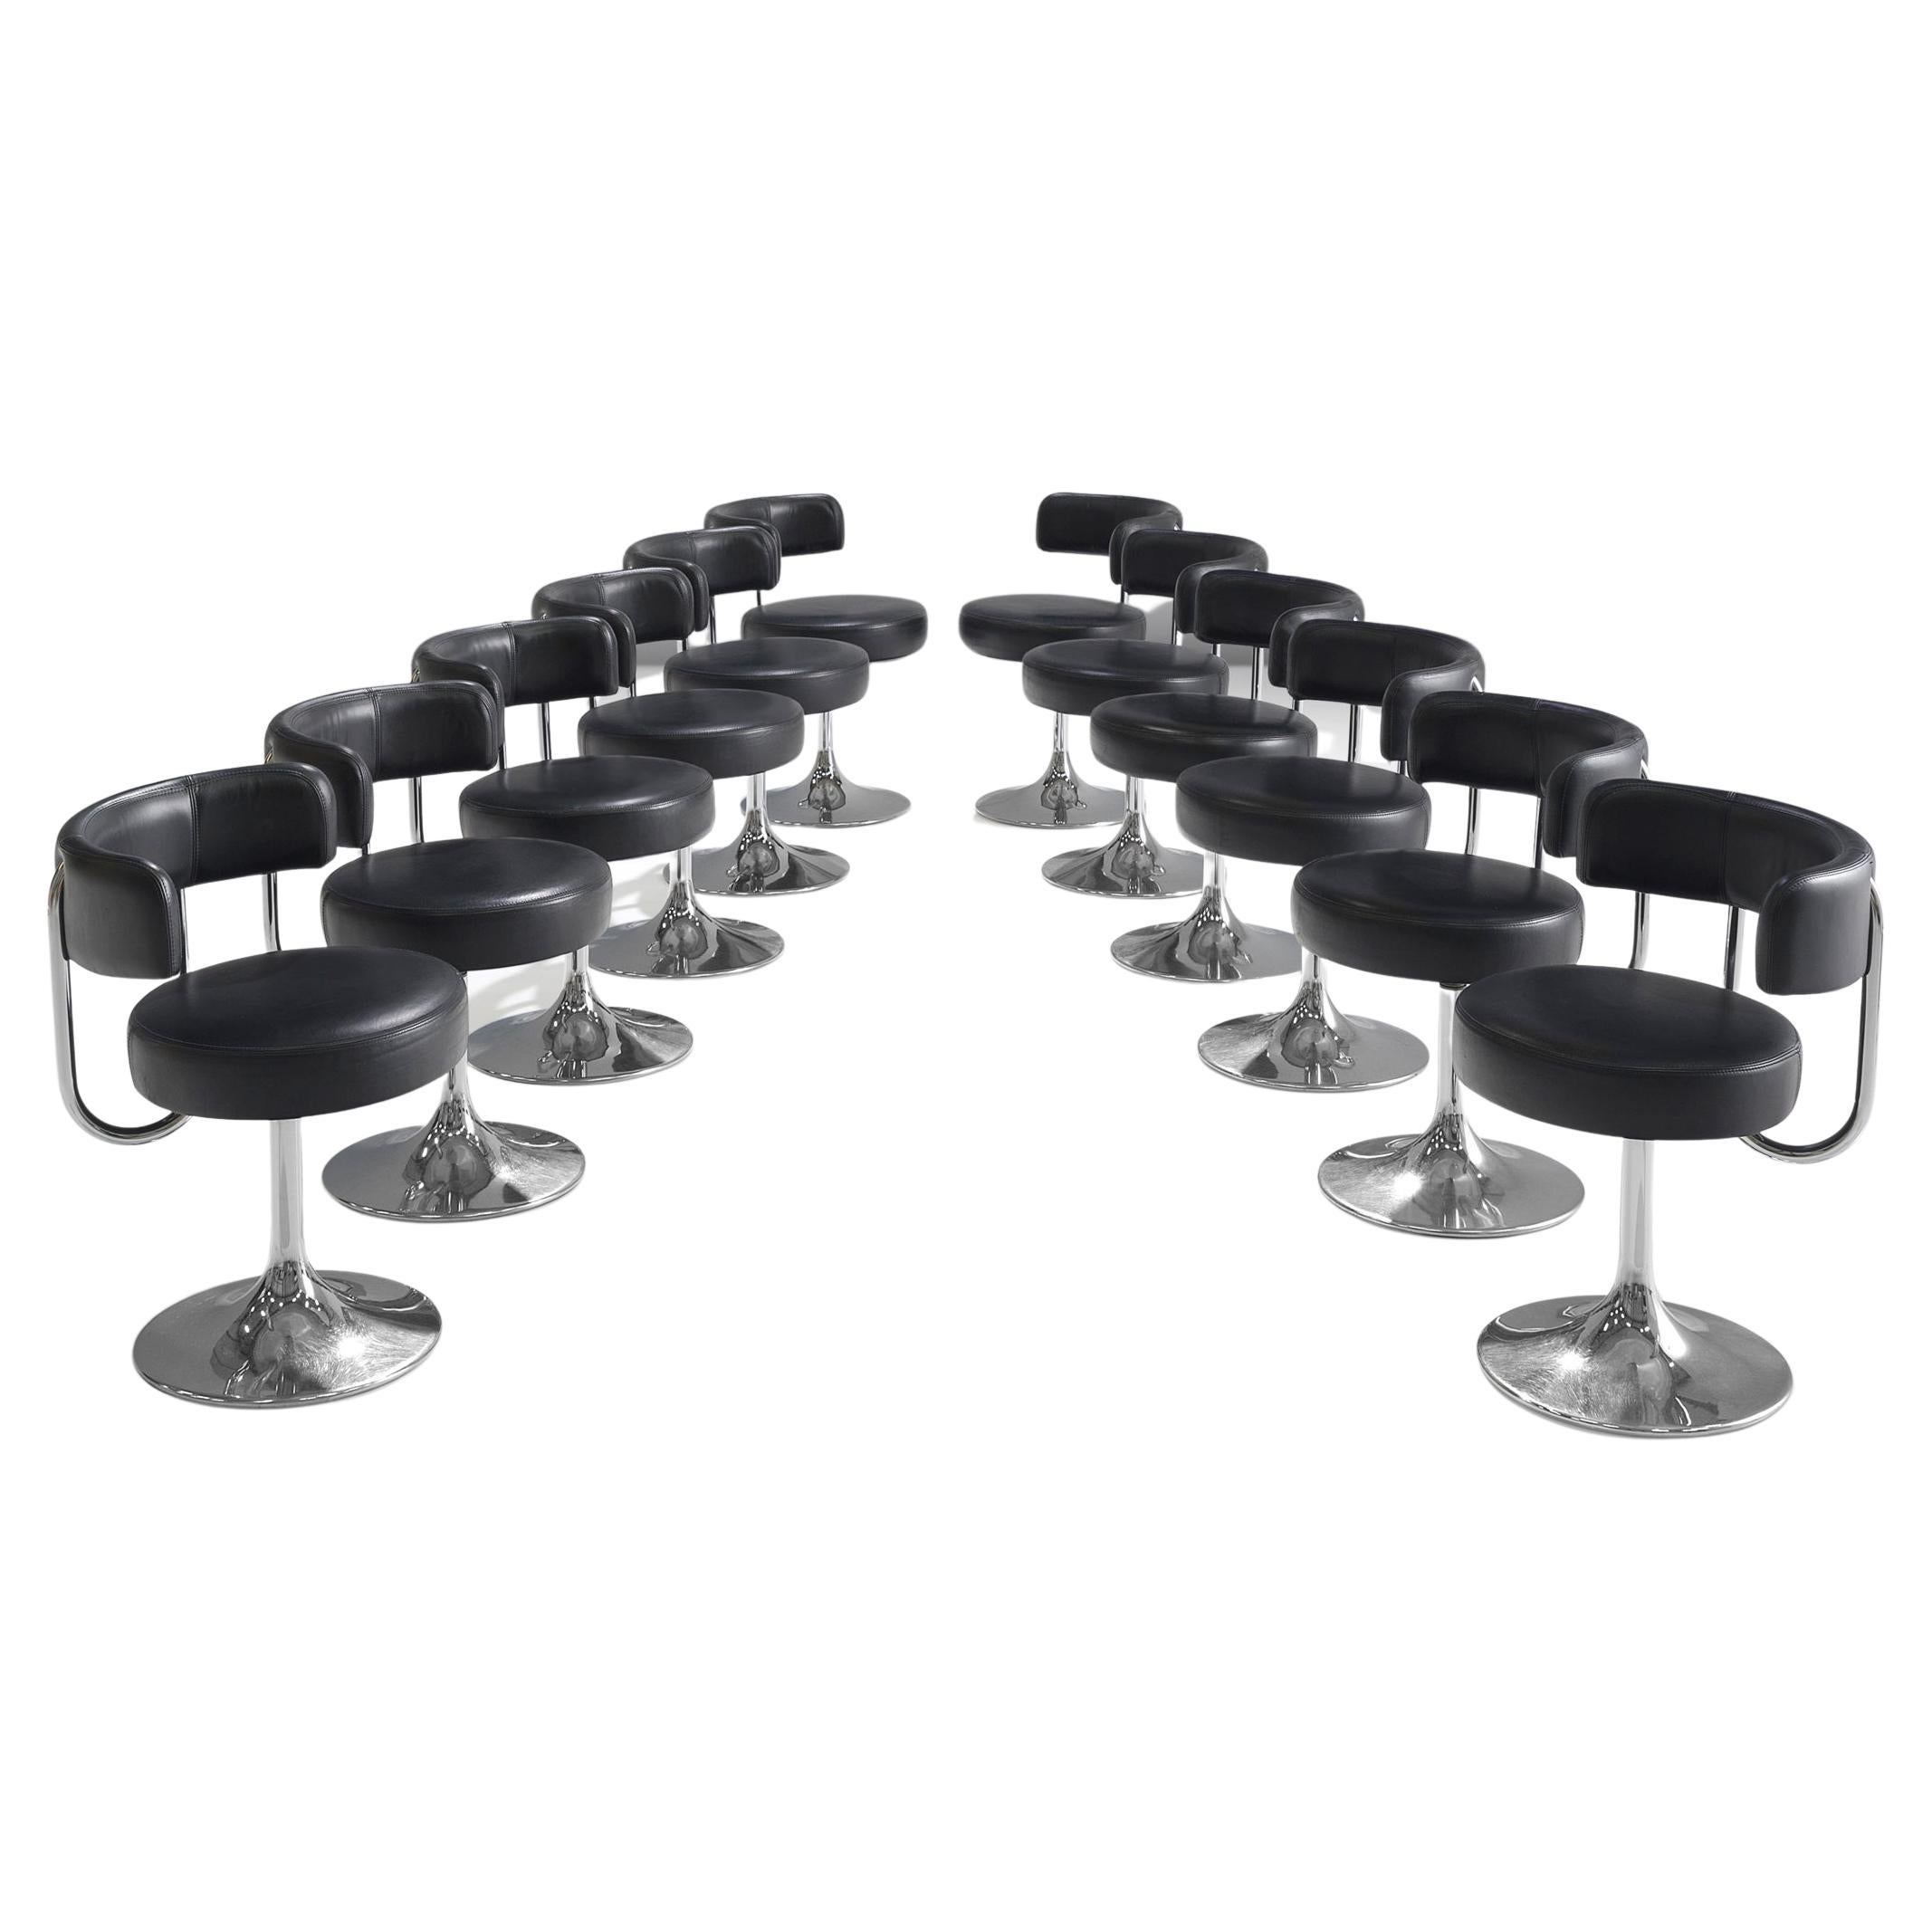 Börje Johanson pour Design/One, ensemble de douze chaises de salle à manger pivotantes, métal, similicuir noir, Suède, années 1970.

Chaises de salle à manger très confortables en similicuir noir. Grâce à l'assise et au dossier souples, ces chaises